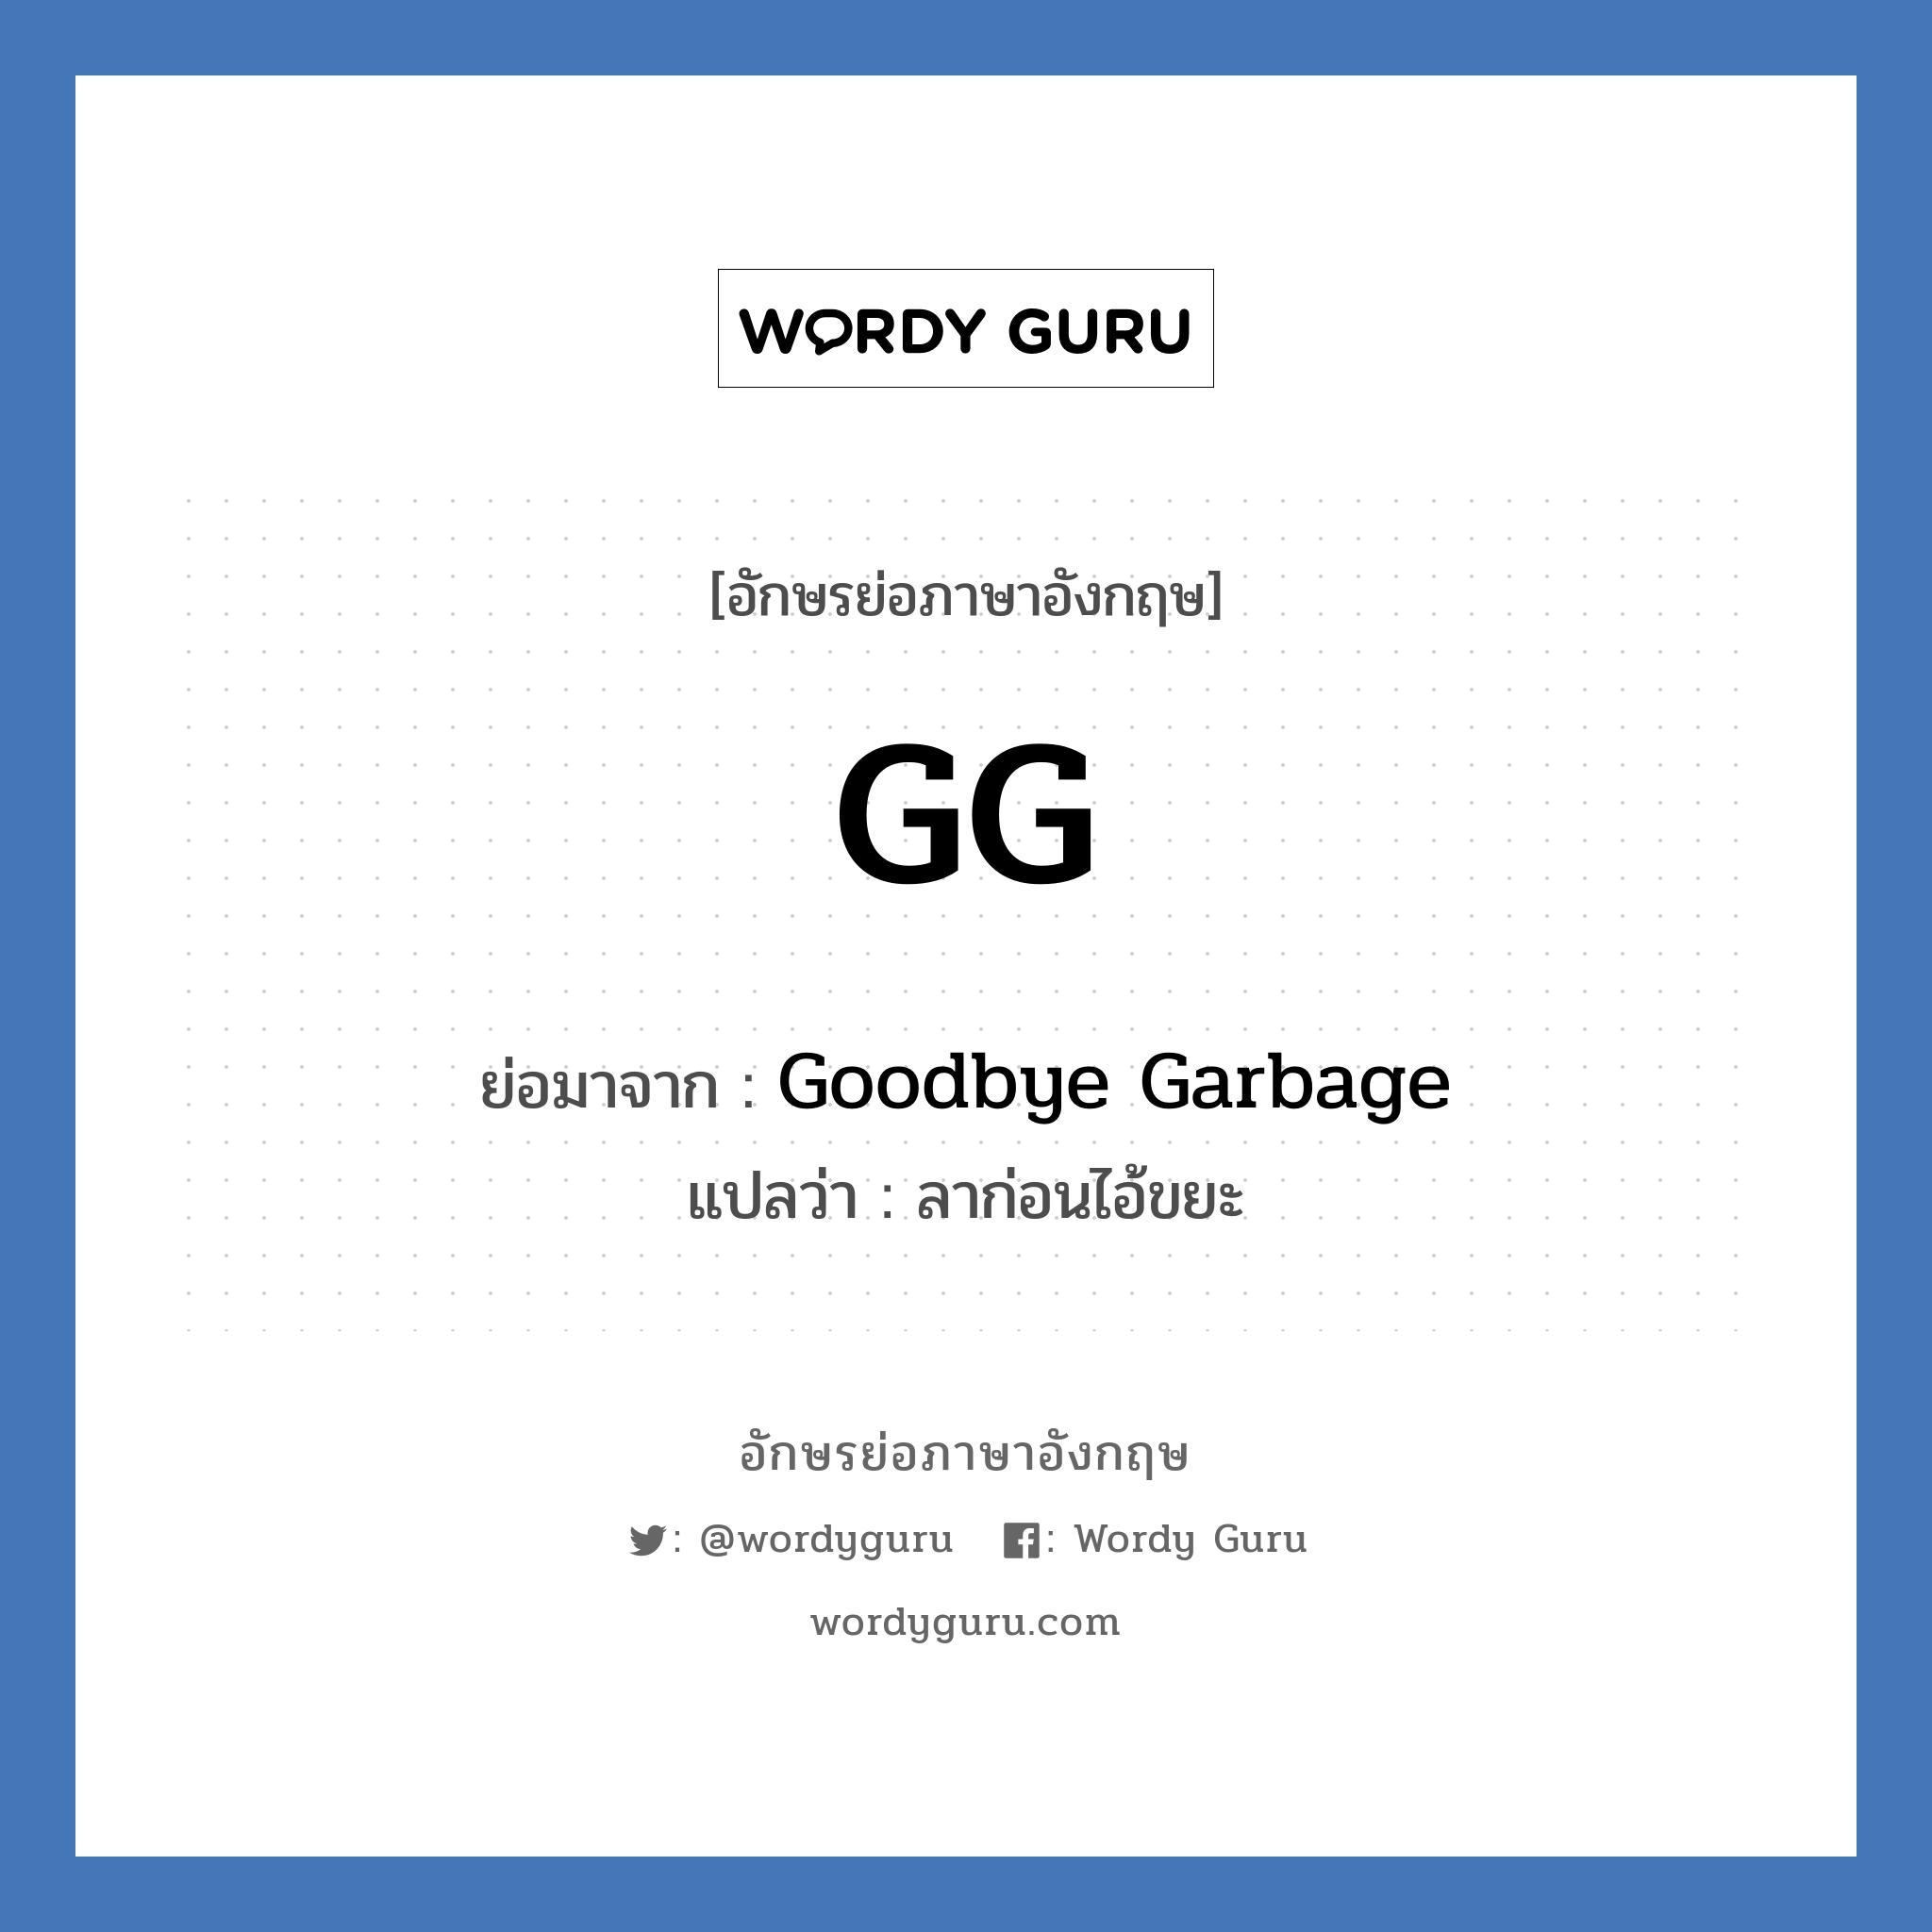 GG ย่อมาจาก? แปลว่า?, อักษรย่อภาษาอังกฤษ GG ย่อมาจาก Goodbye Garbage แปลว่า ลาก่อนไอ้ขยะ